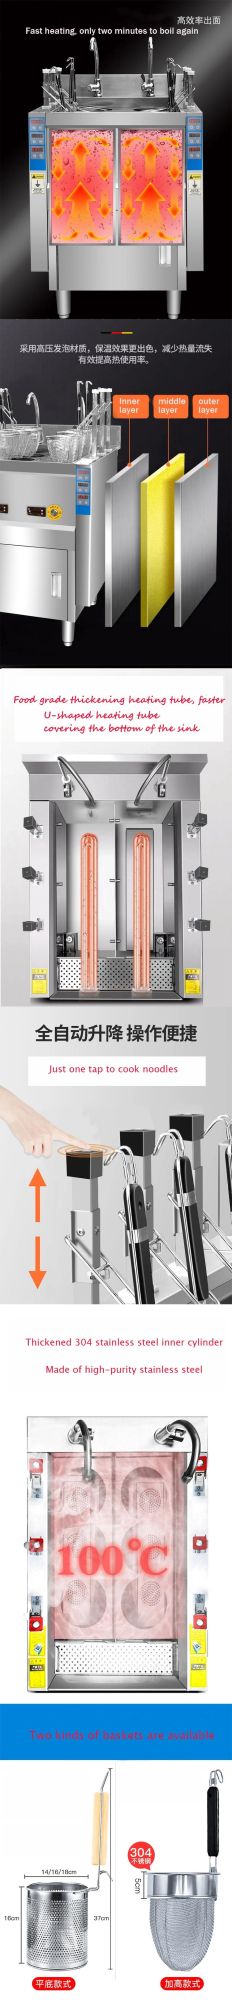 Commercial Automatic Lift-up Gas 6 Basket Noodle Pasta Cooker Noodle Pot Cooker